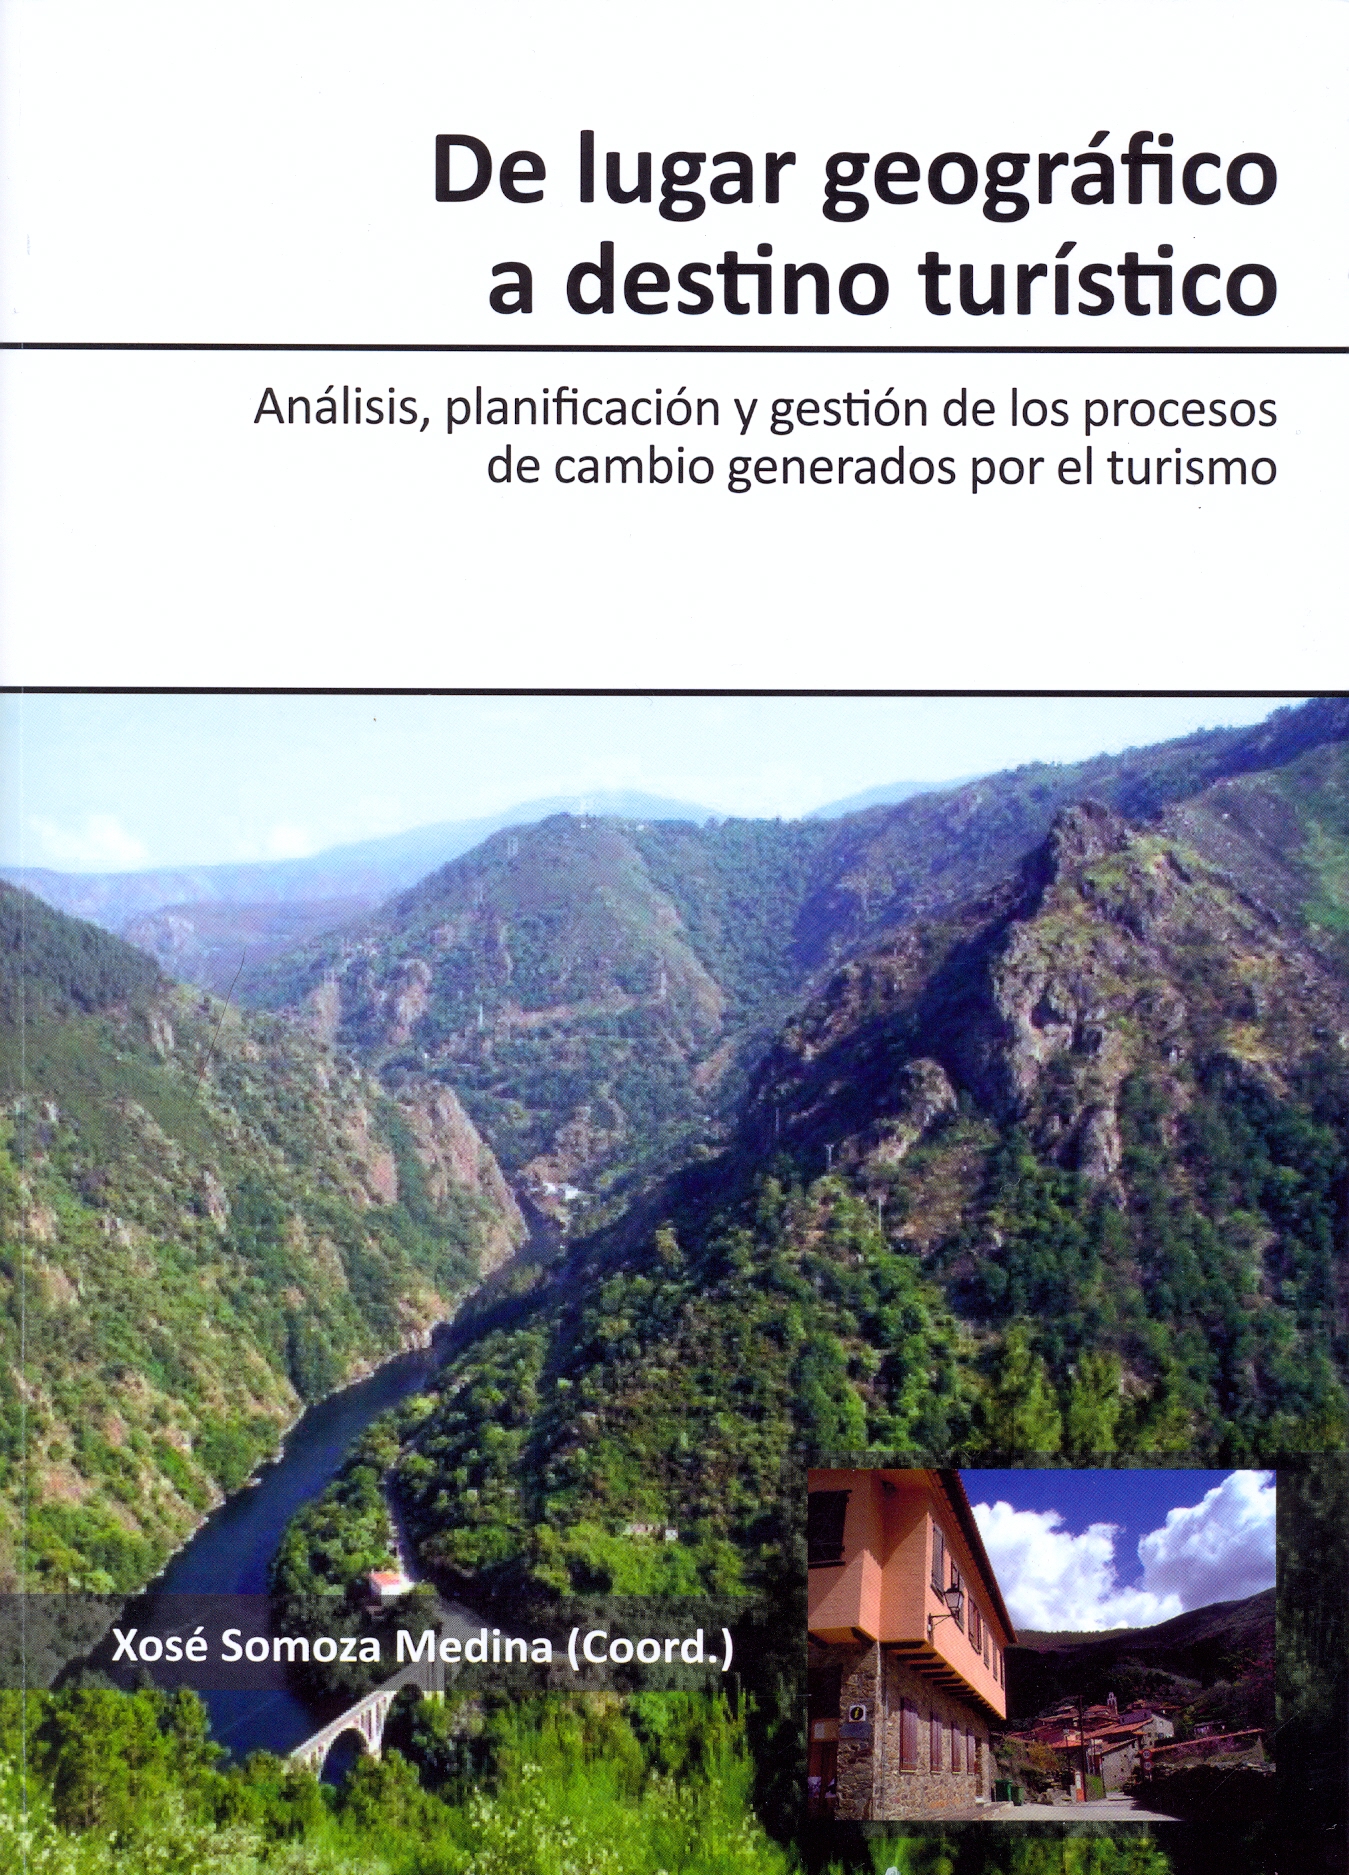 Imagen de portada del libro De lugar geográfico a destino turístico